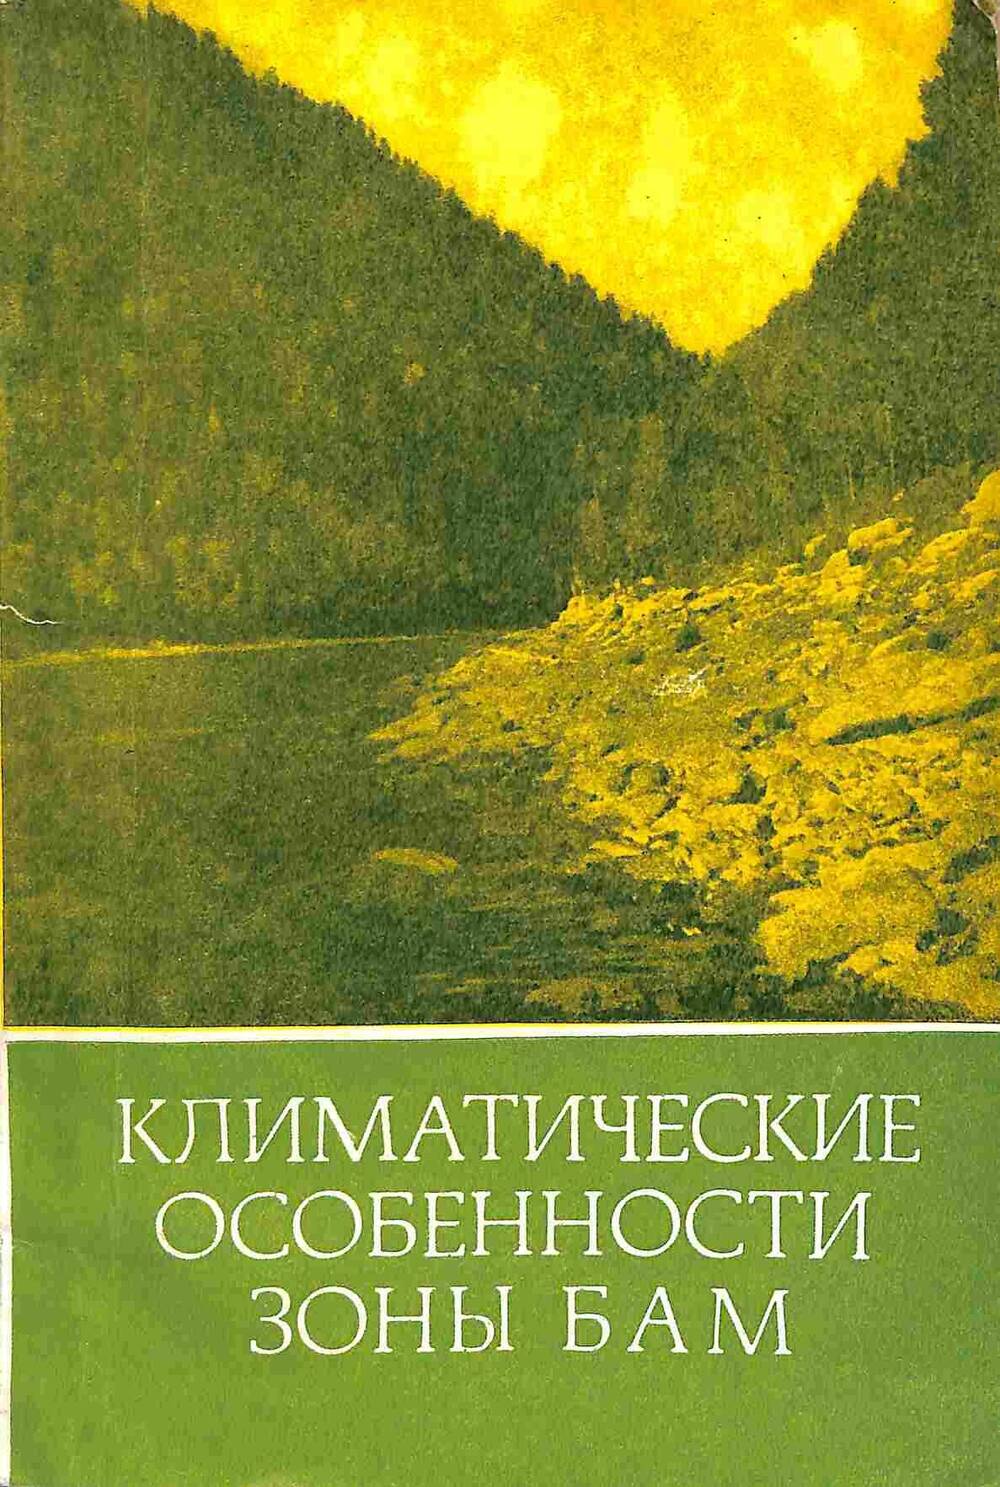 Книга. Климатические особенности зоны БАМ. Новосибирск. 1979 год